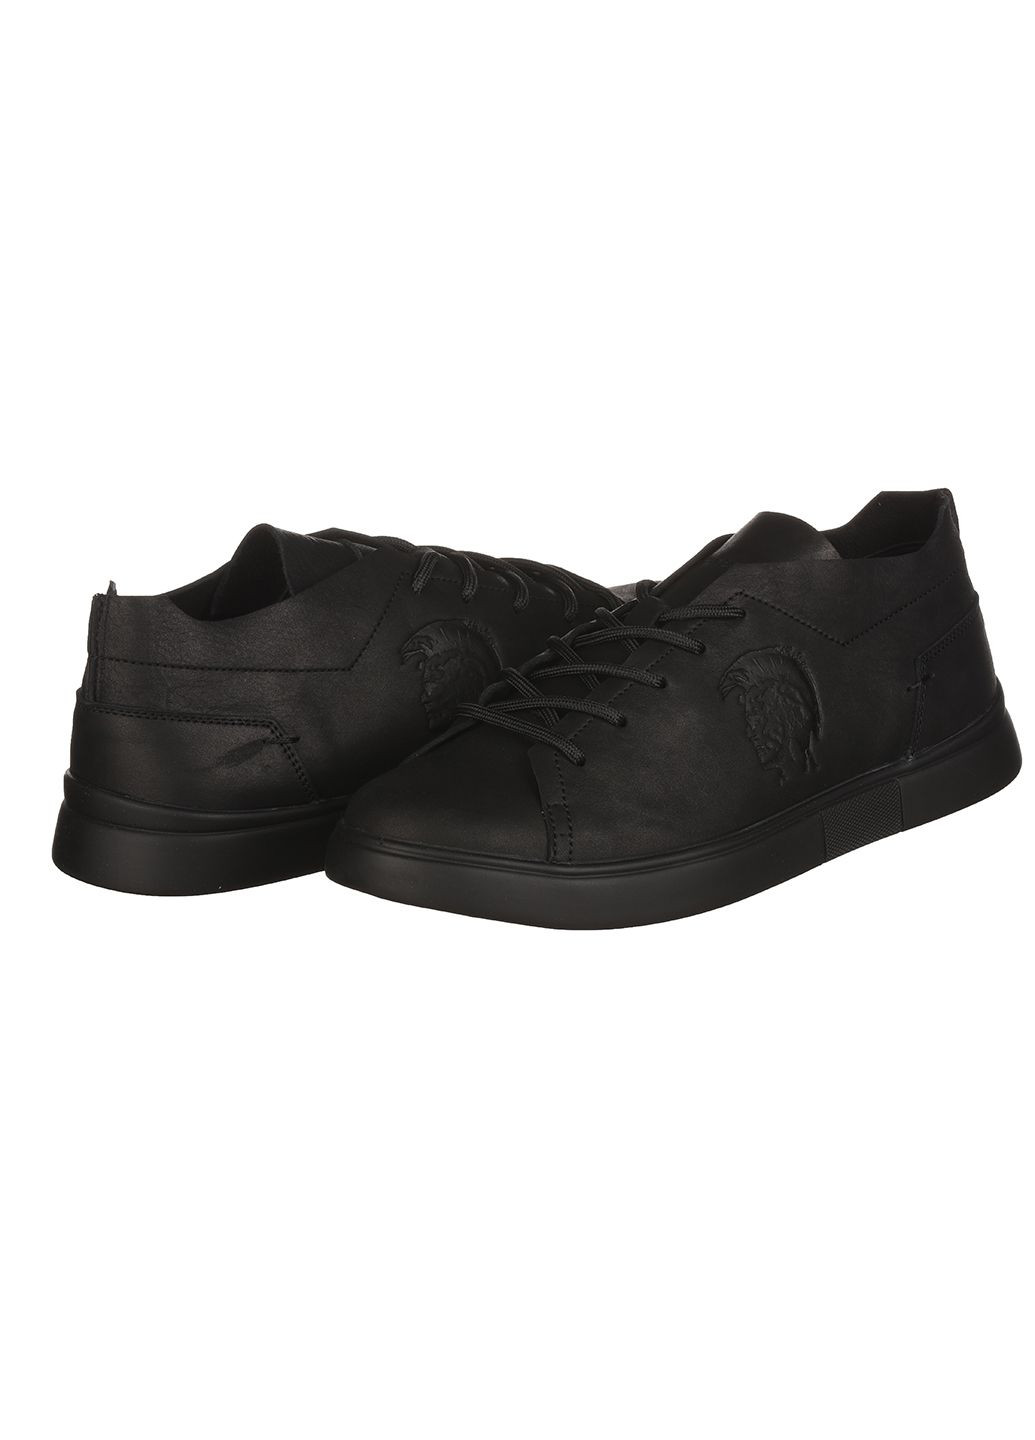 Черные демисезонные мужские кроссовки m-81 Trendy